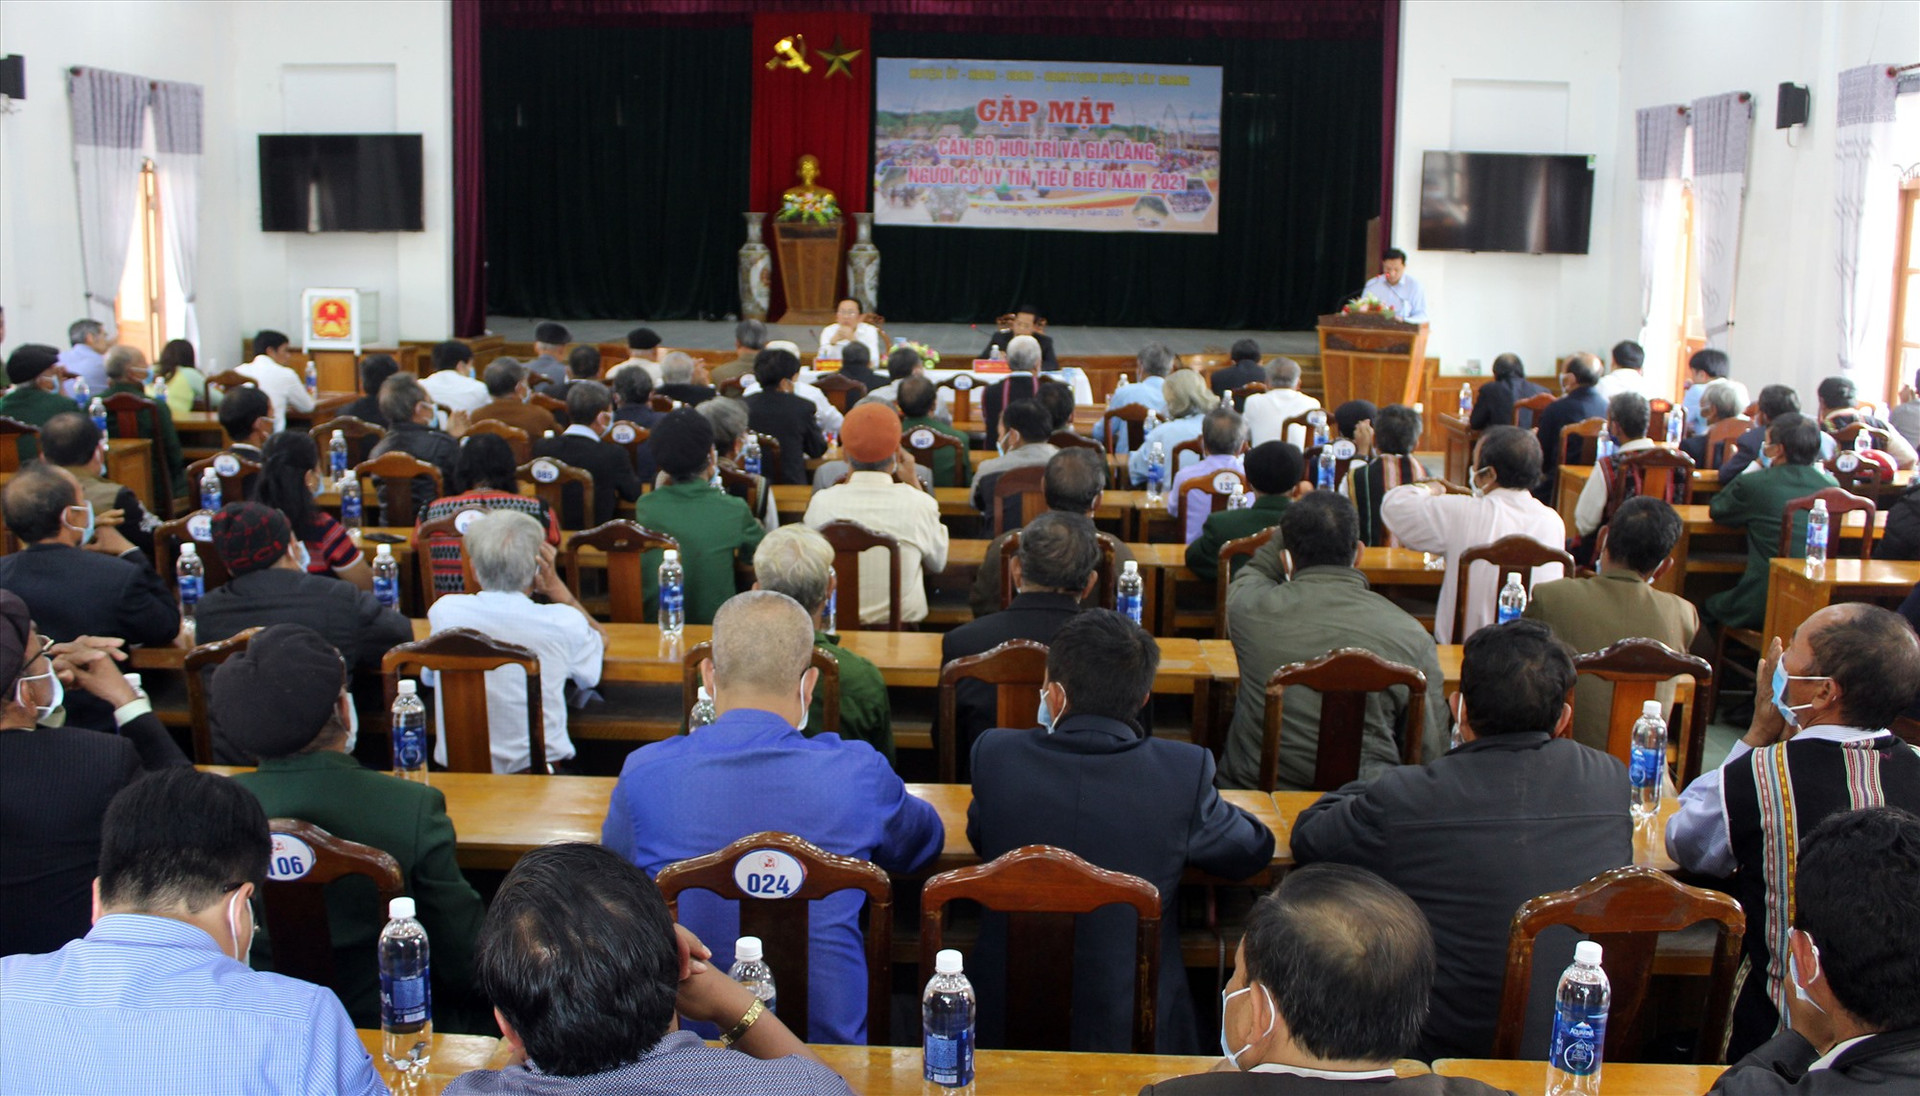 Huyện Tây Giang tổ chức buổi gặp mặt các già làng, người có uy tín để kêu gọi hỗ trợ tuyên truyền về công tác bầu cử. Ảnh: Đ.H